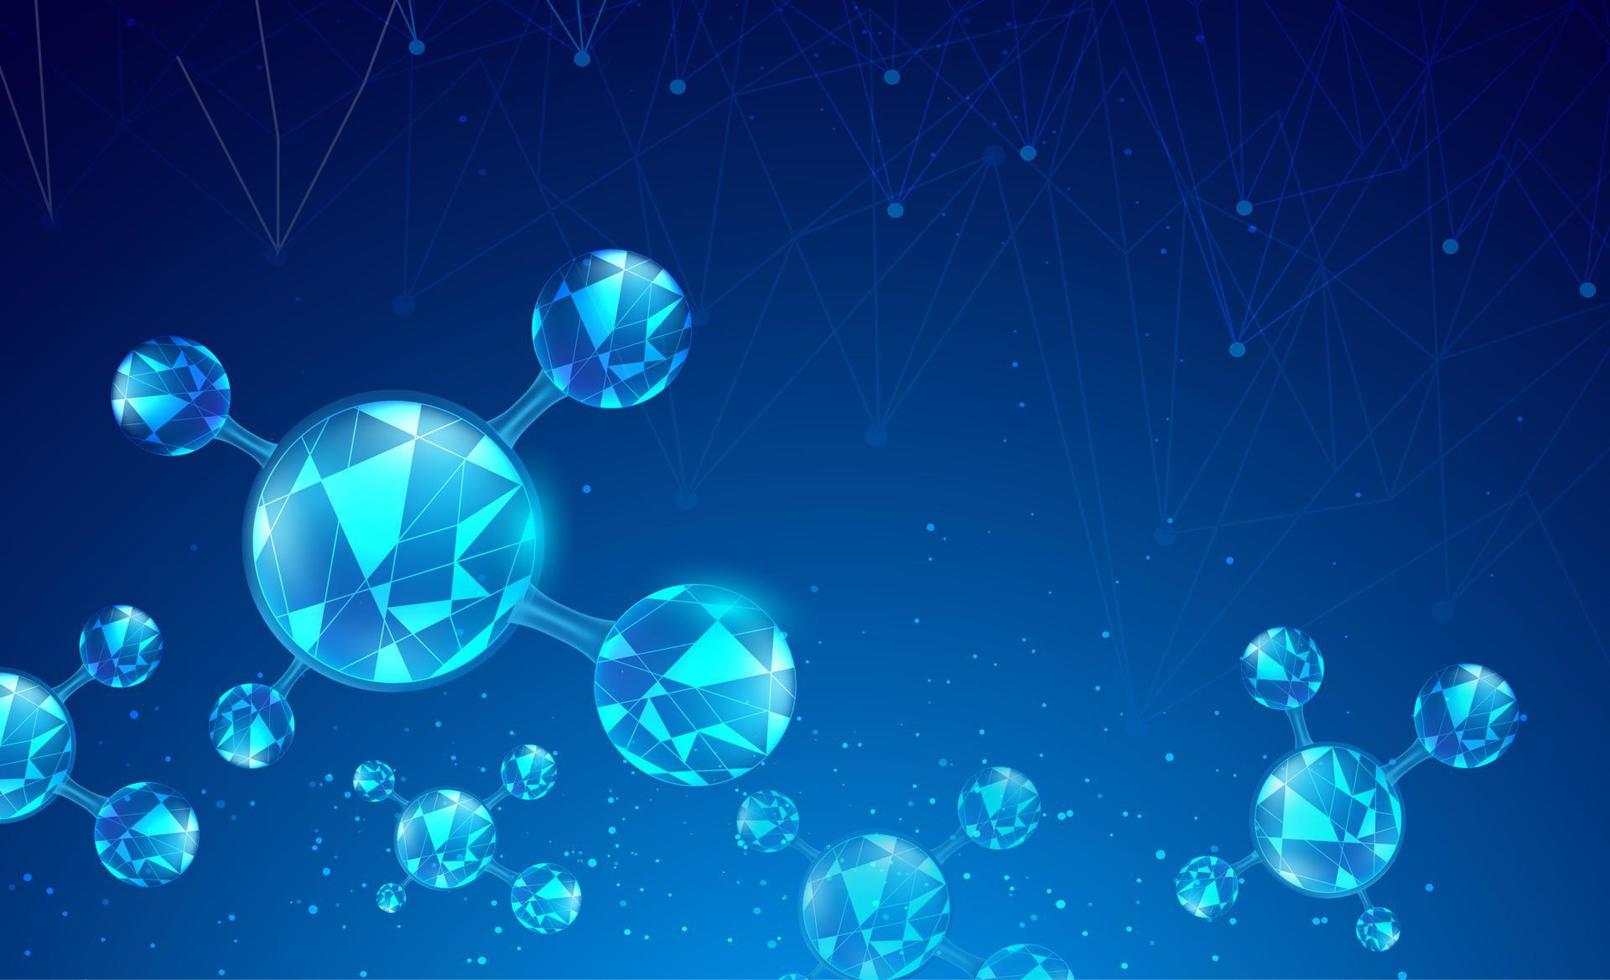 abstrakt vetenskap bakgrund med molekyler element. gradient blå bakgrund med molekyl-dna för medicinska, vetenskaps- och teknikkoncept. vektor illustration